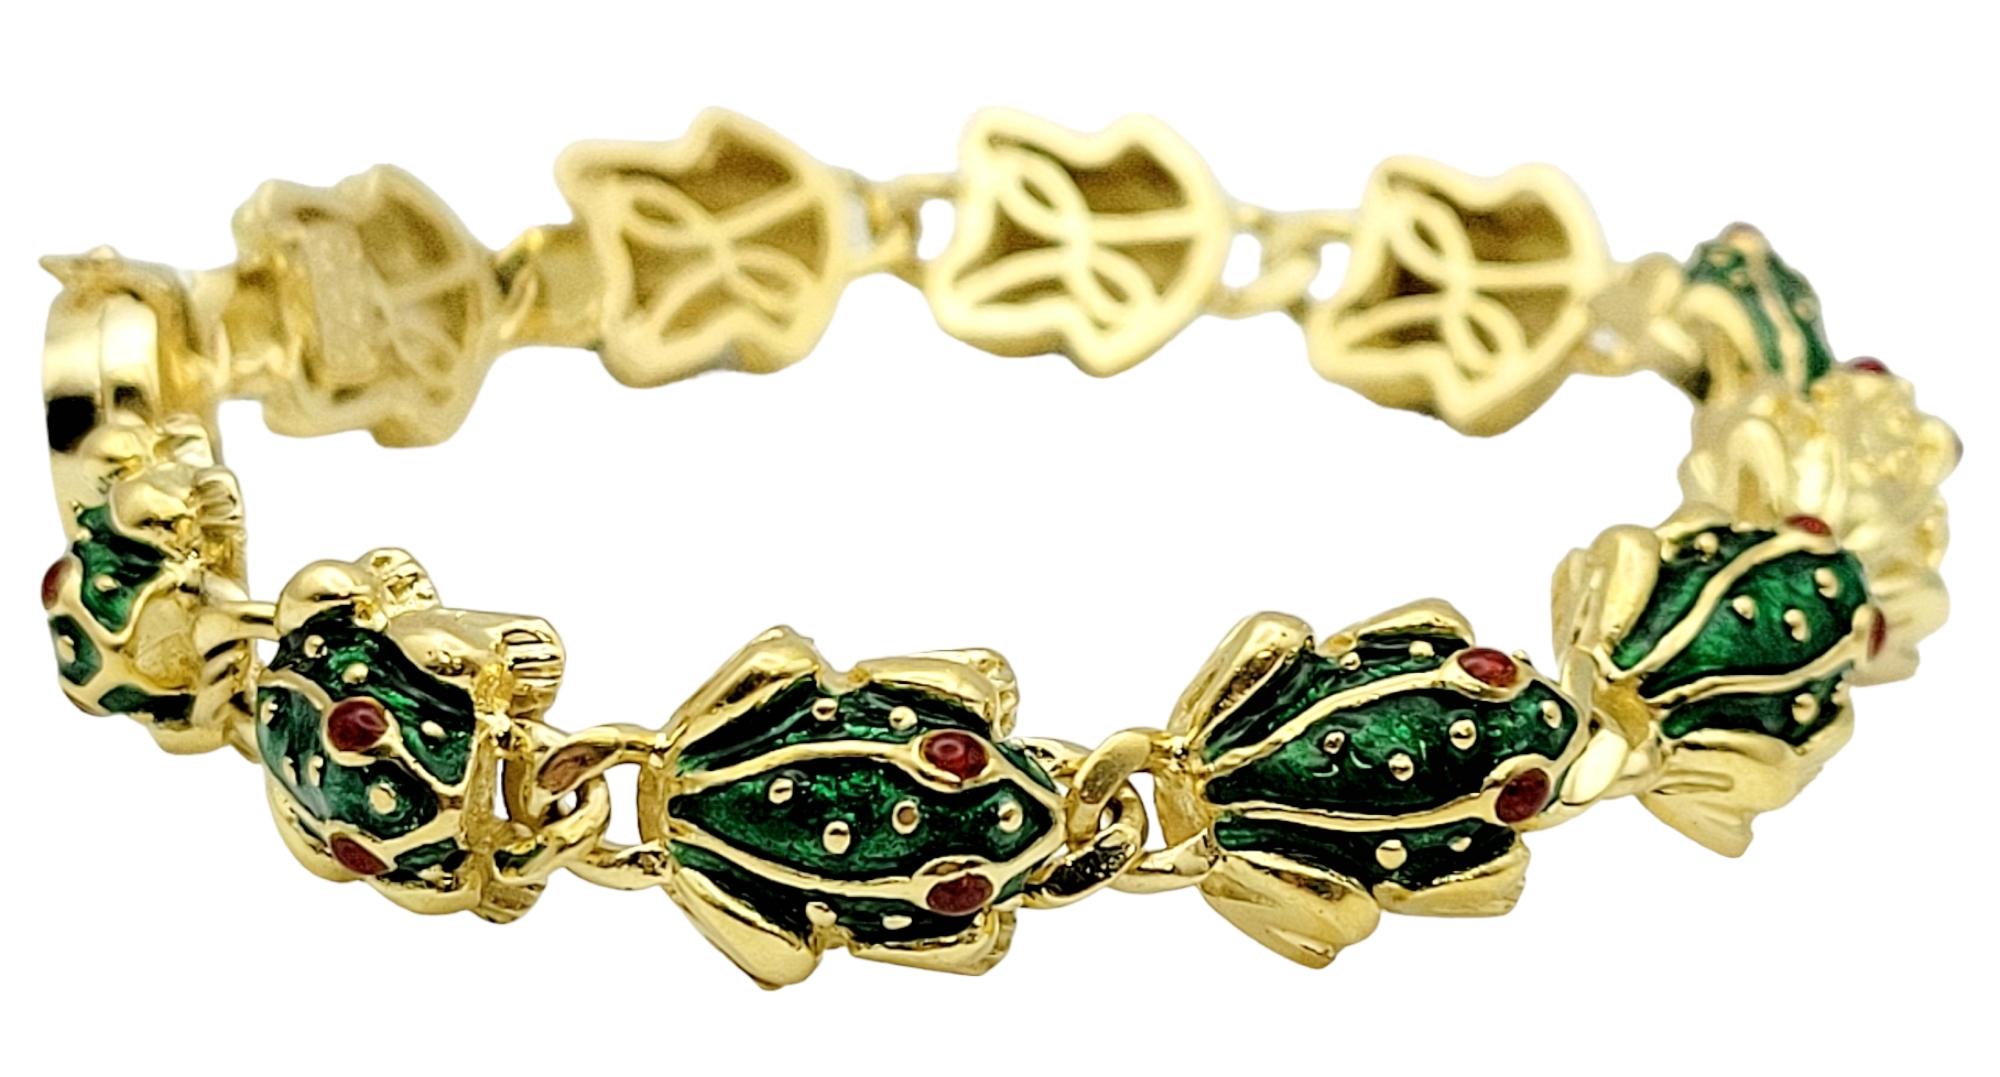 Dieses unglaubliche, moderne Frosch-Gliederarmband aus Gold ist ein authentisches Hidalgo-Design! Das schöne Armband besteht aus detaillierten 3-D-Froschgliedern mit grünen und roten Emaille-Akzenten. Es gibt 11 Froschglieder, von denen 10 einen